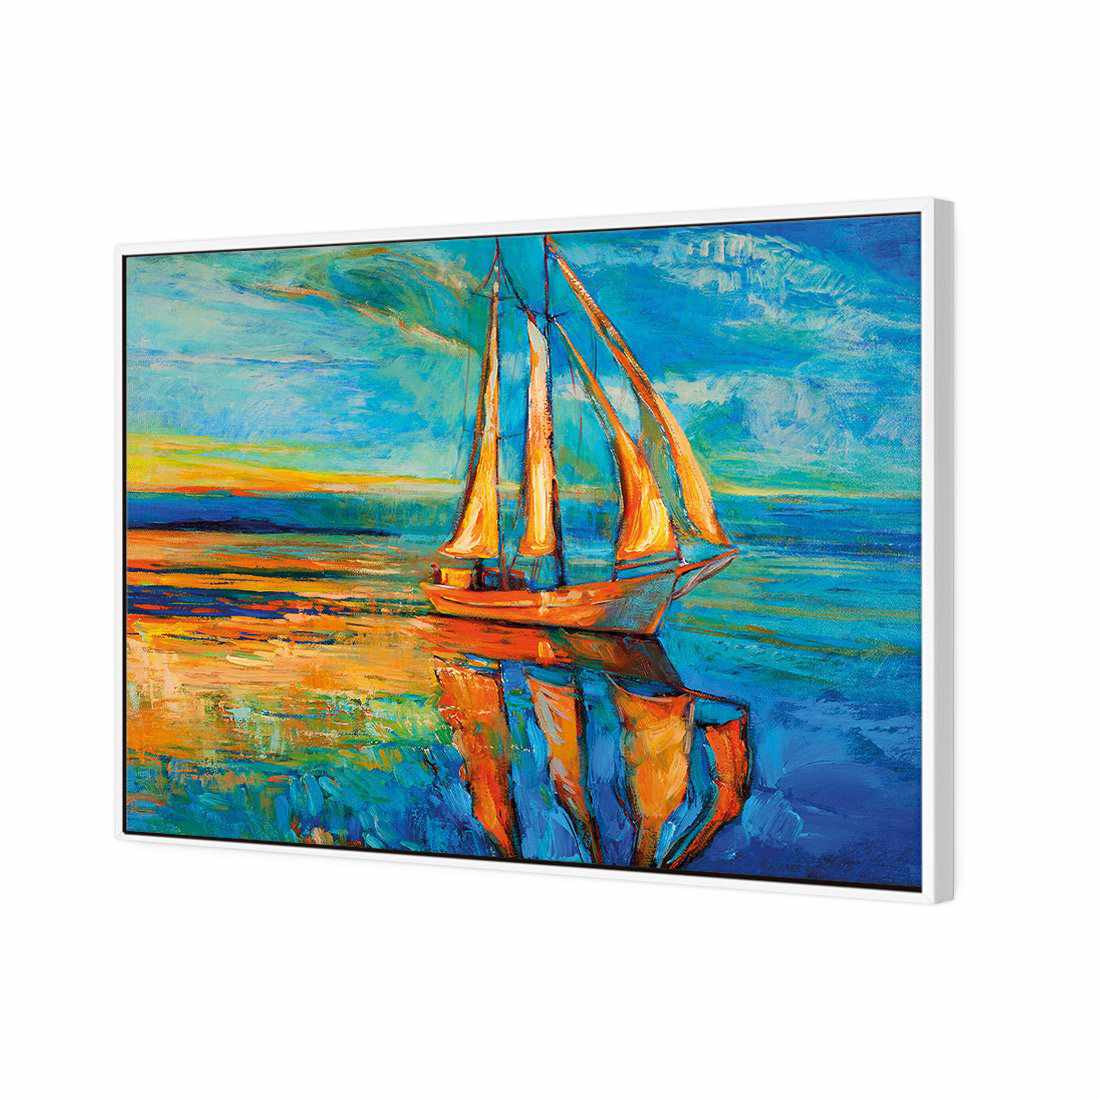 Sailing Boat Reflected Canvas Art-Canvas-Wall Art Designs-45x30cm-Canvas - White Frame-Wall Art Designs